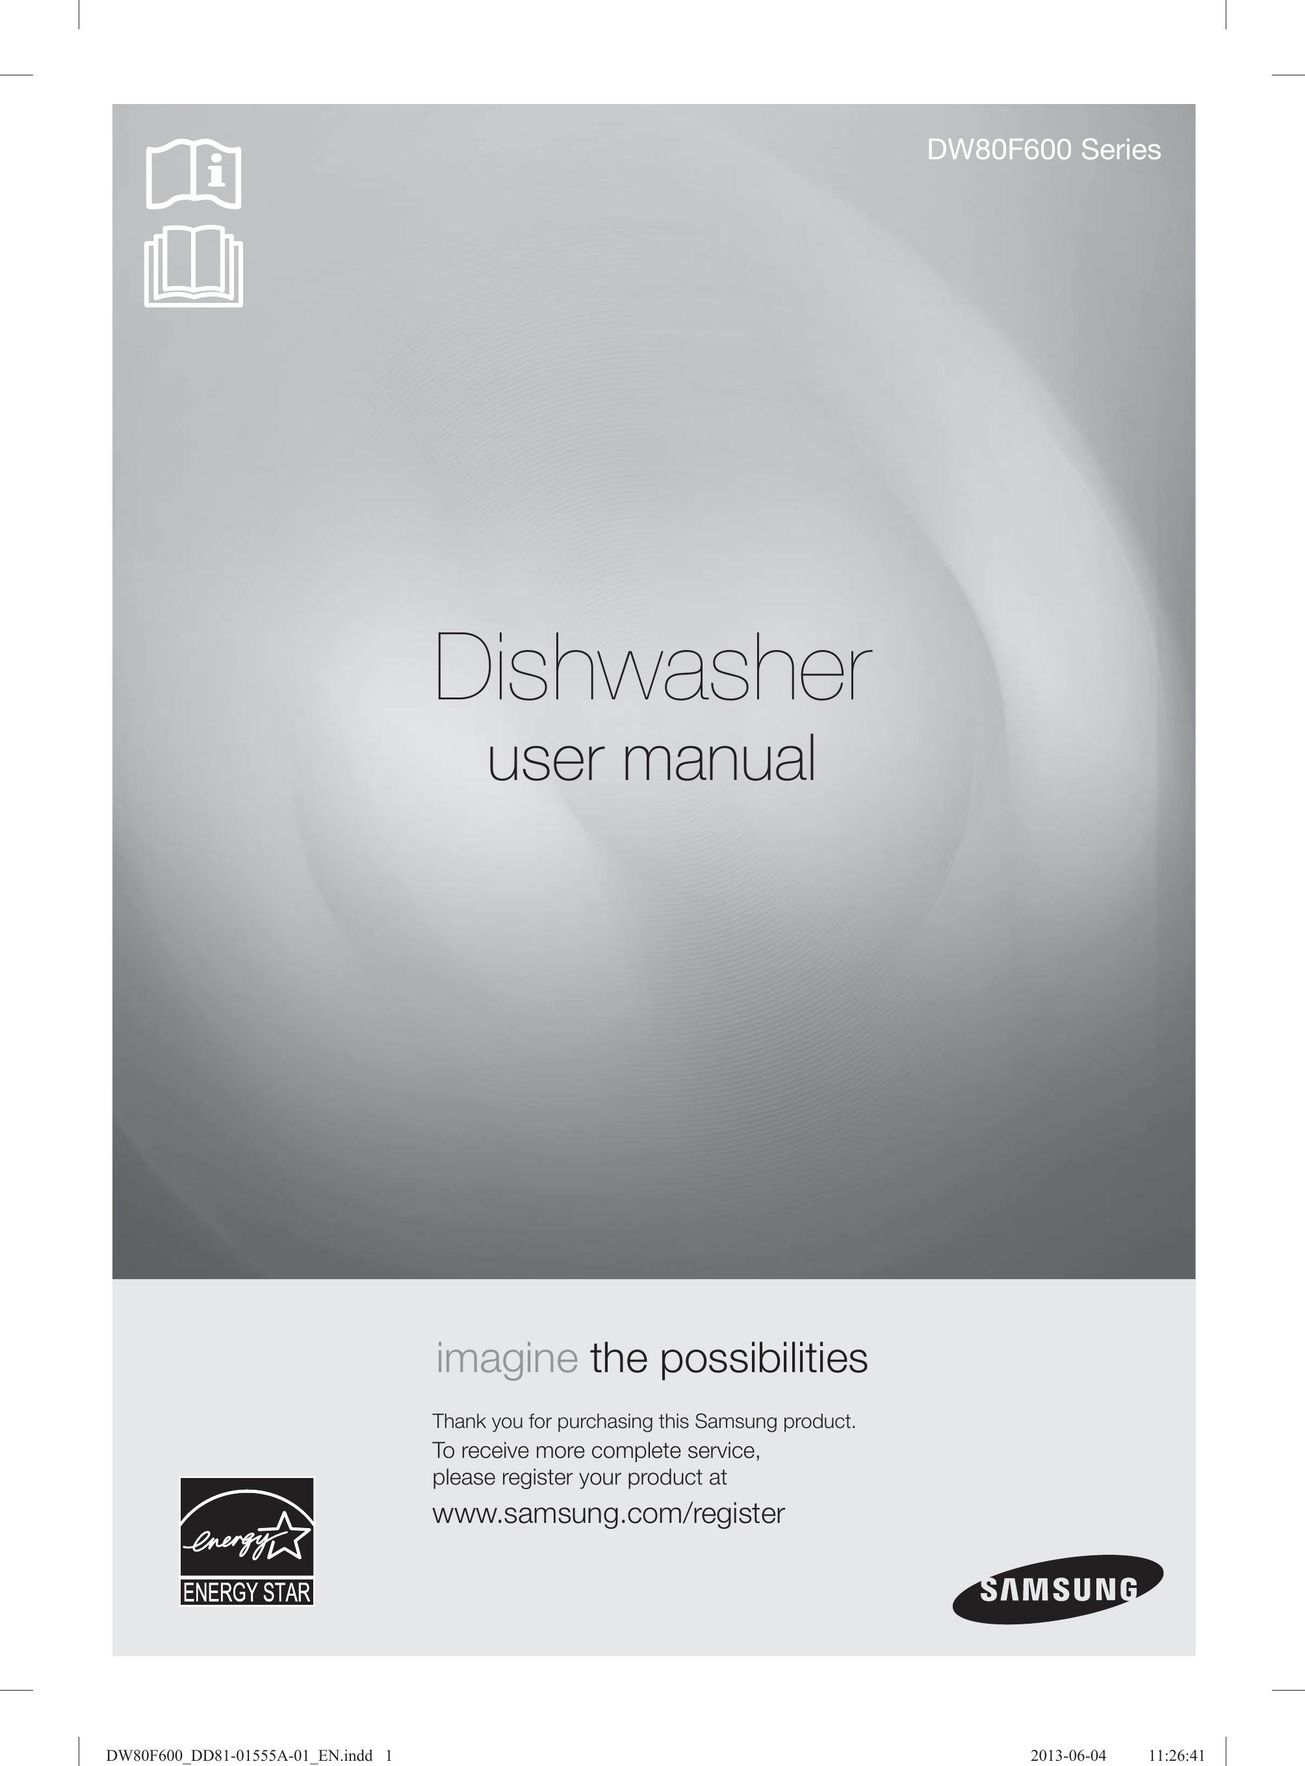 Samsung DW80F600UTW Dishwasher User Manual